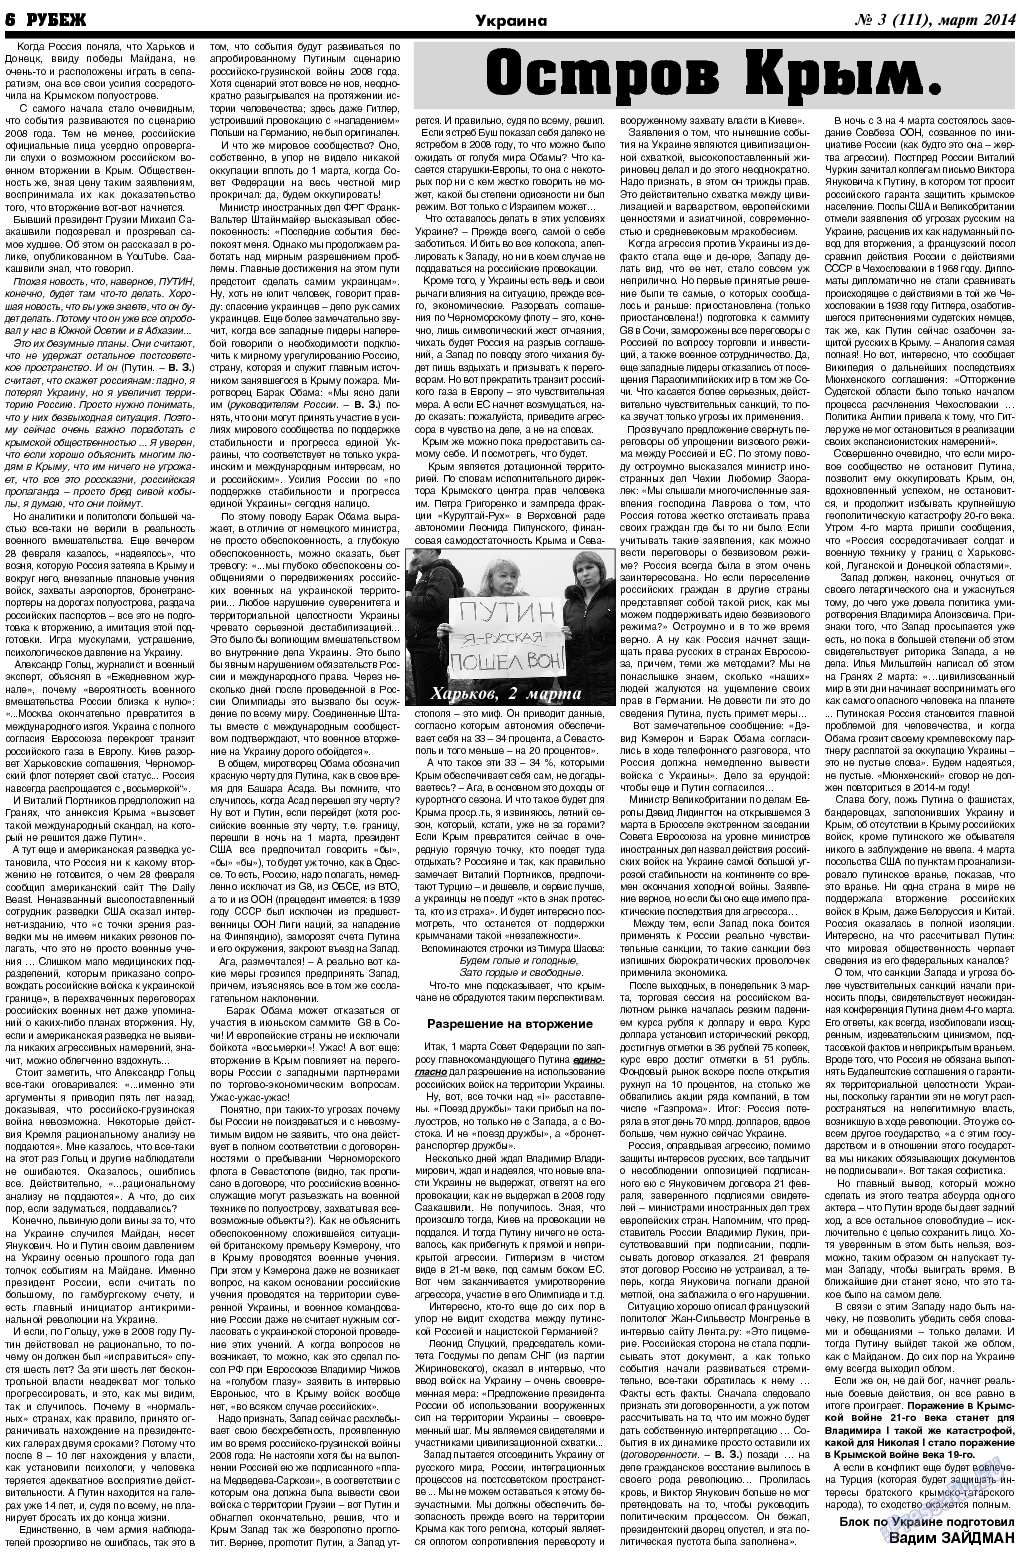 Рубеж (газета). 2014 год, номер 3, стр. 6